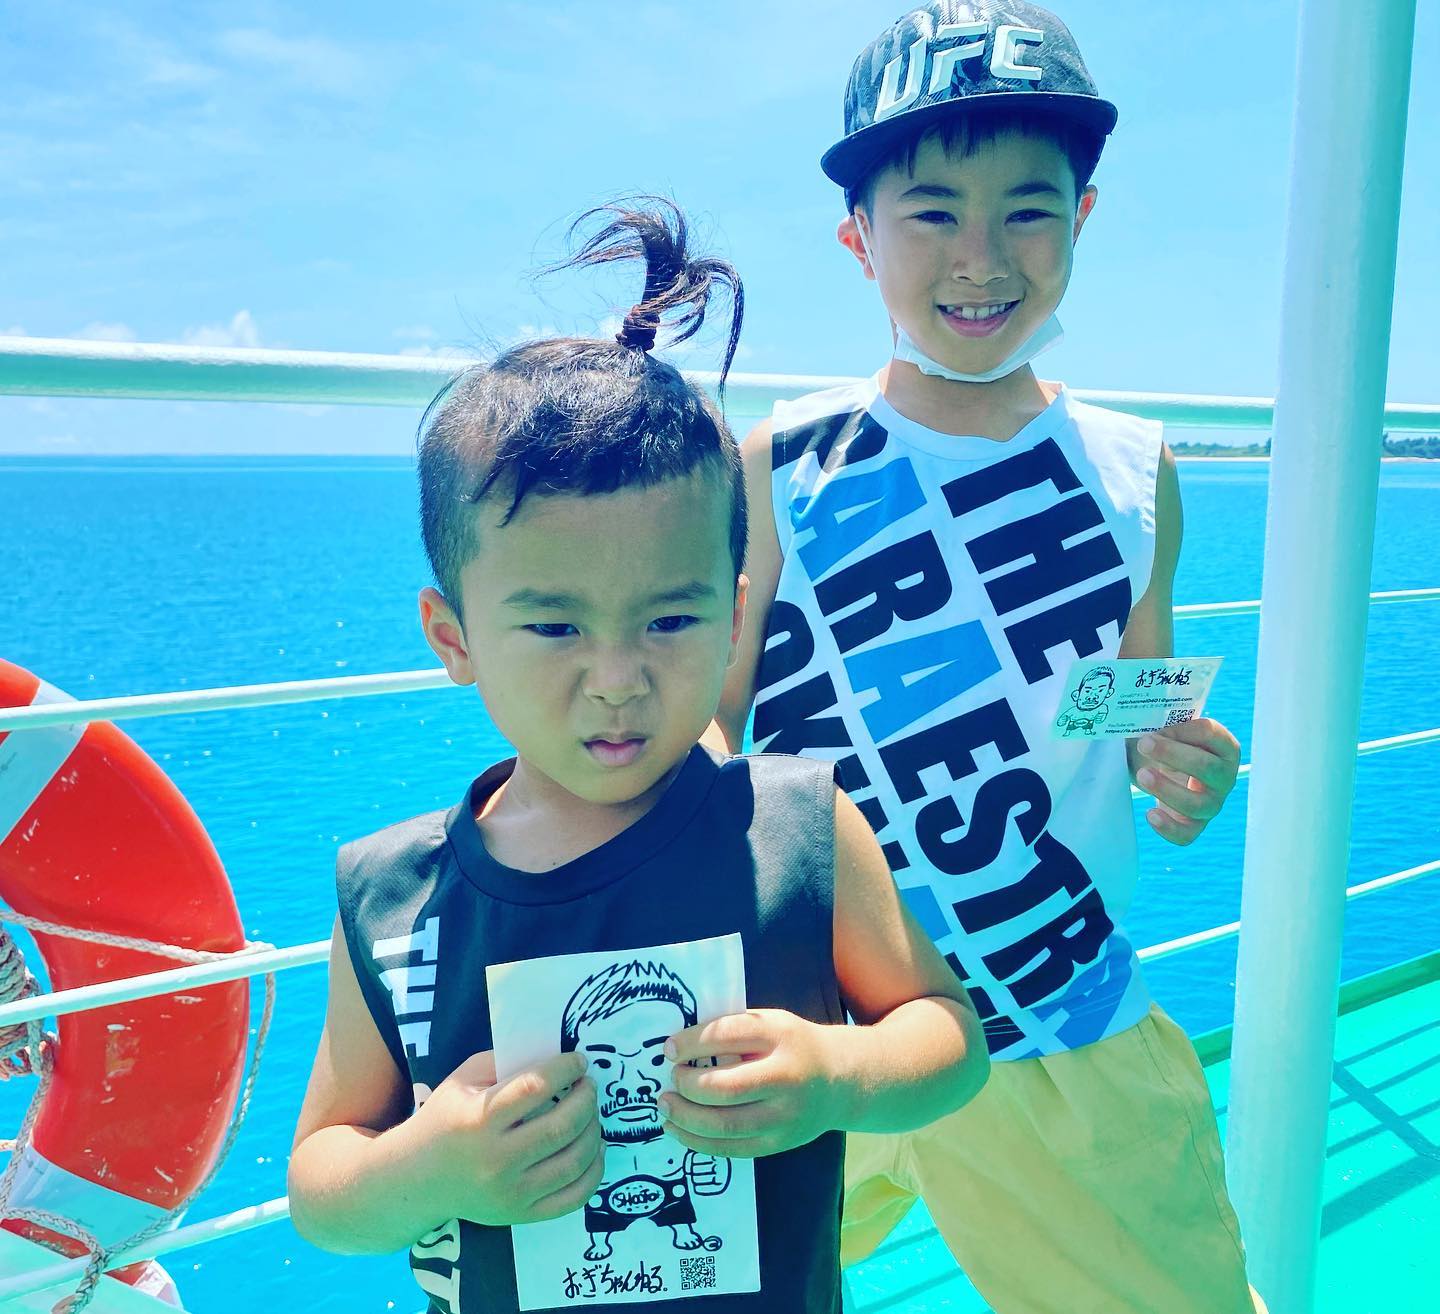 Ogi-chan Sticker Get! ! "Ogi-chan's first time in Okinawa!" "Ogi-chan is going to Tsuken Island!"#おぎちゃん#扇久保博正#沖縄#津堅島